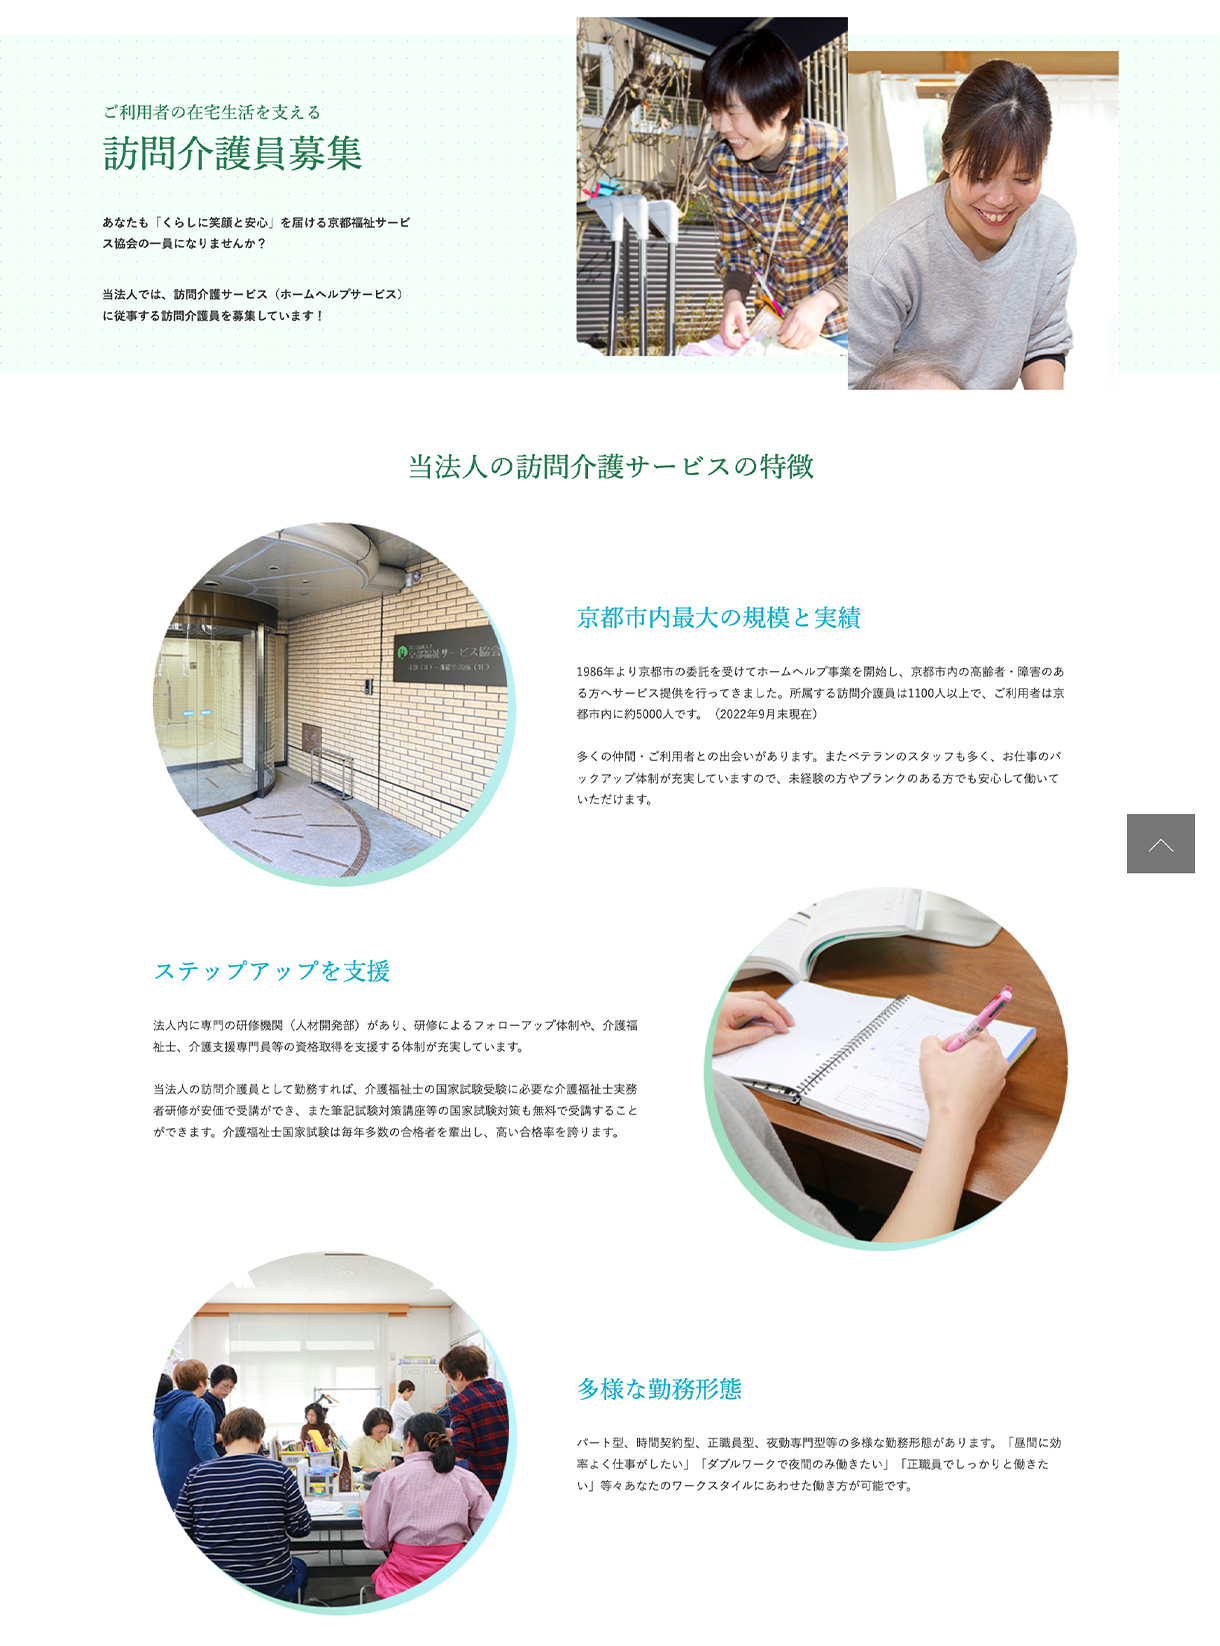 社会福祉法人 京都福祉サービス協会のwebサイトの画像